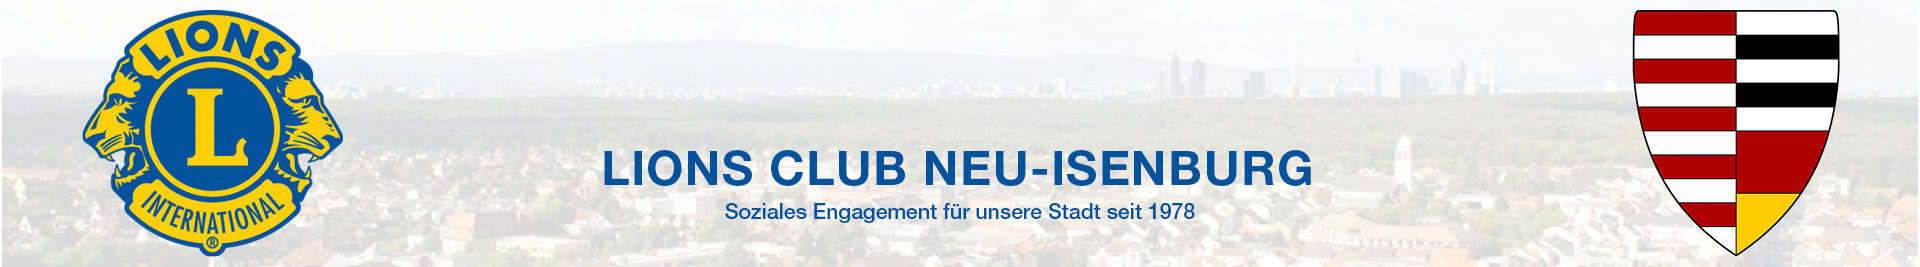 Lions Club Neu-Isenburg